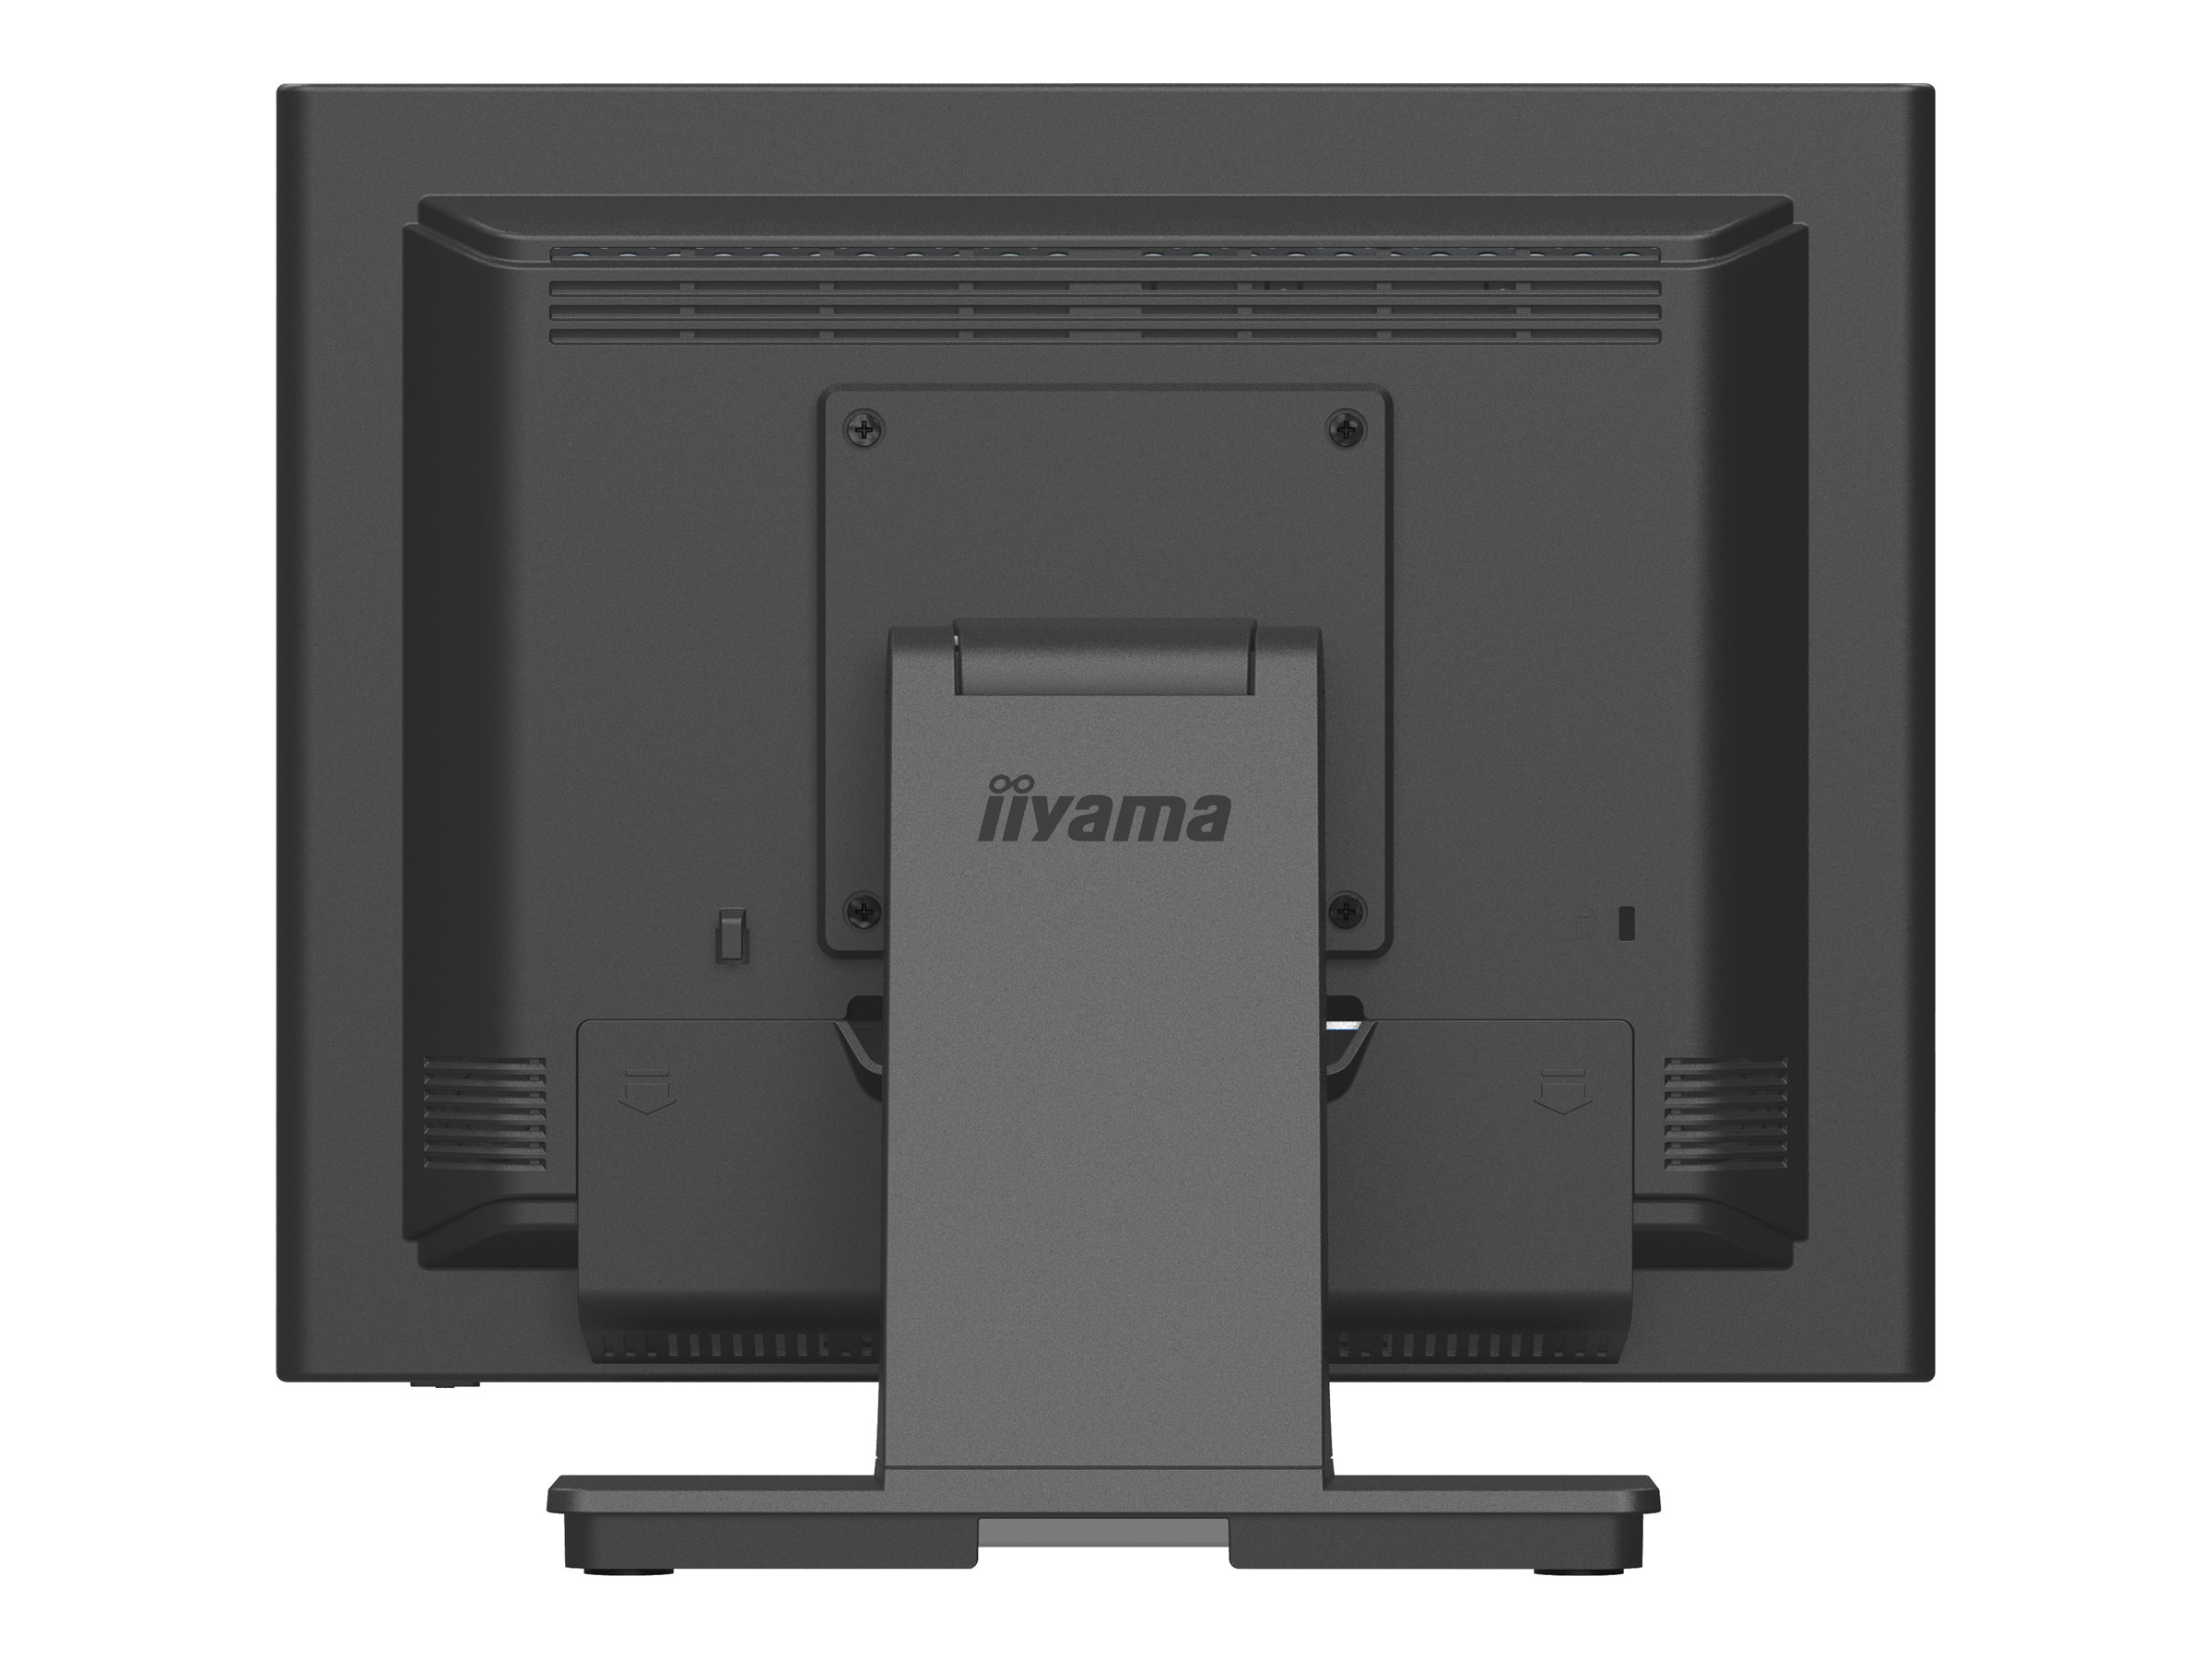 iiyama ProLite T1531SR-B1S - Écran LED - 15" - écran tactile - 1024 x 768 - VA - 350 cd/m² - 2500:1 - 18 ms - HDMI, VGA, DisplayPort - haut-parleurs - noir, mat - T1531SR-B1S - Écrans d'ordinateur